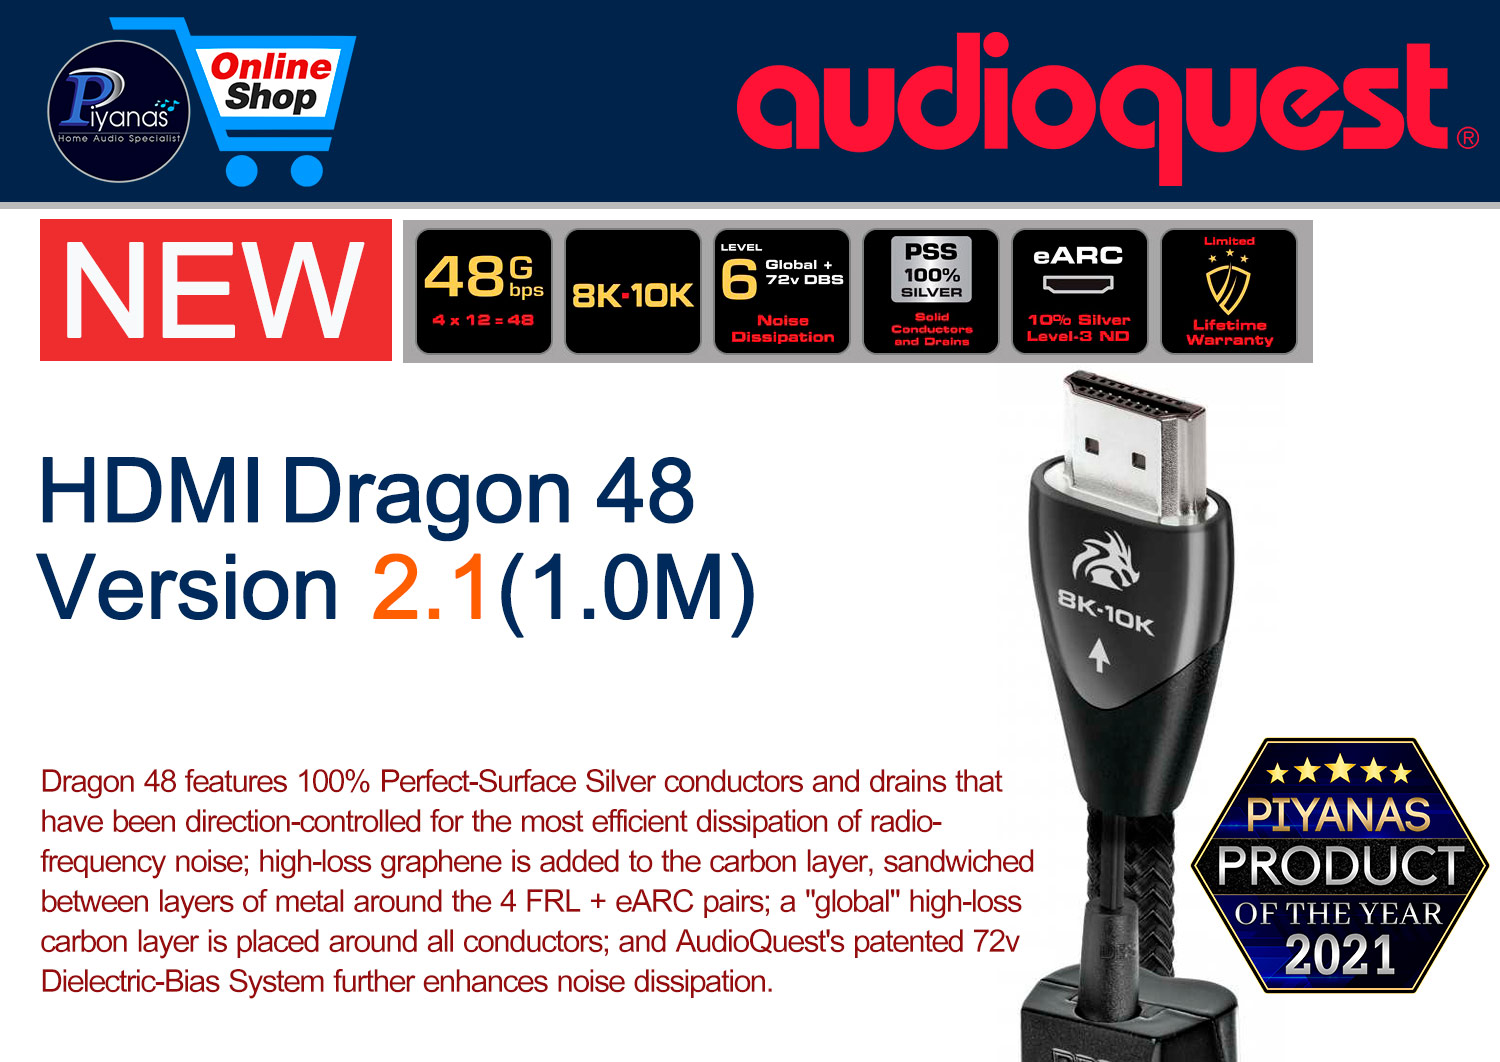 HDMI-Dragon 48 Version 2.1 (1.0M)